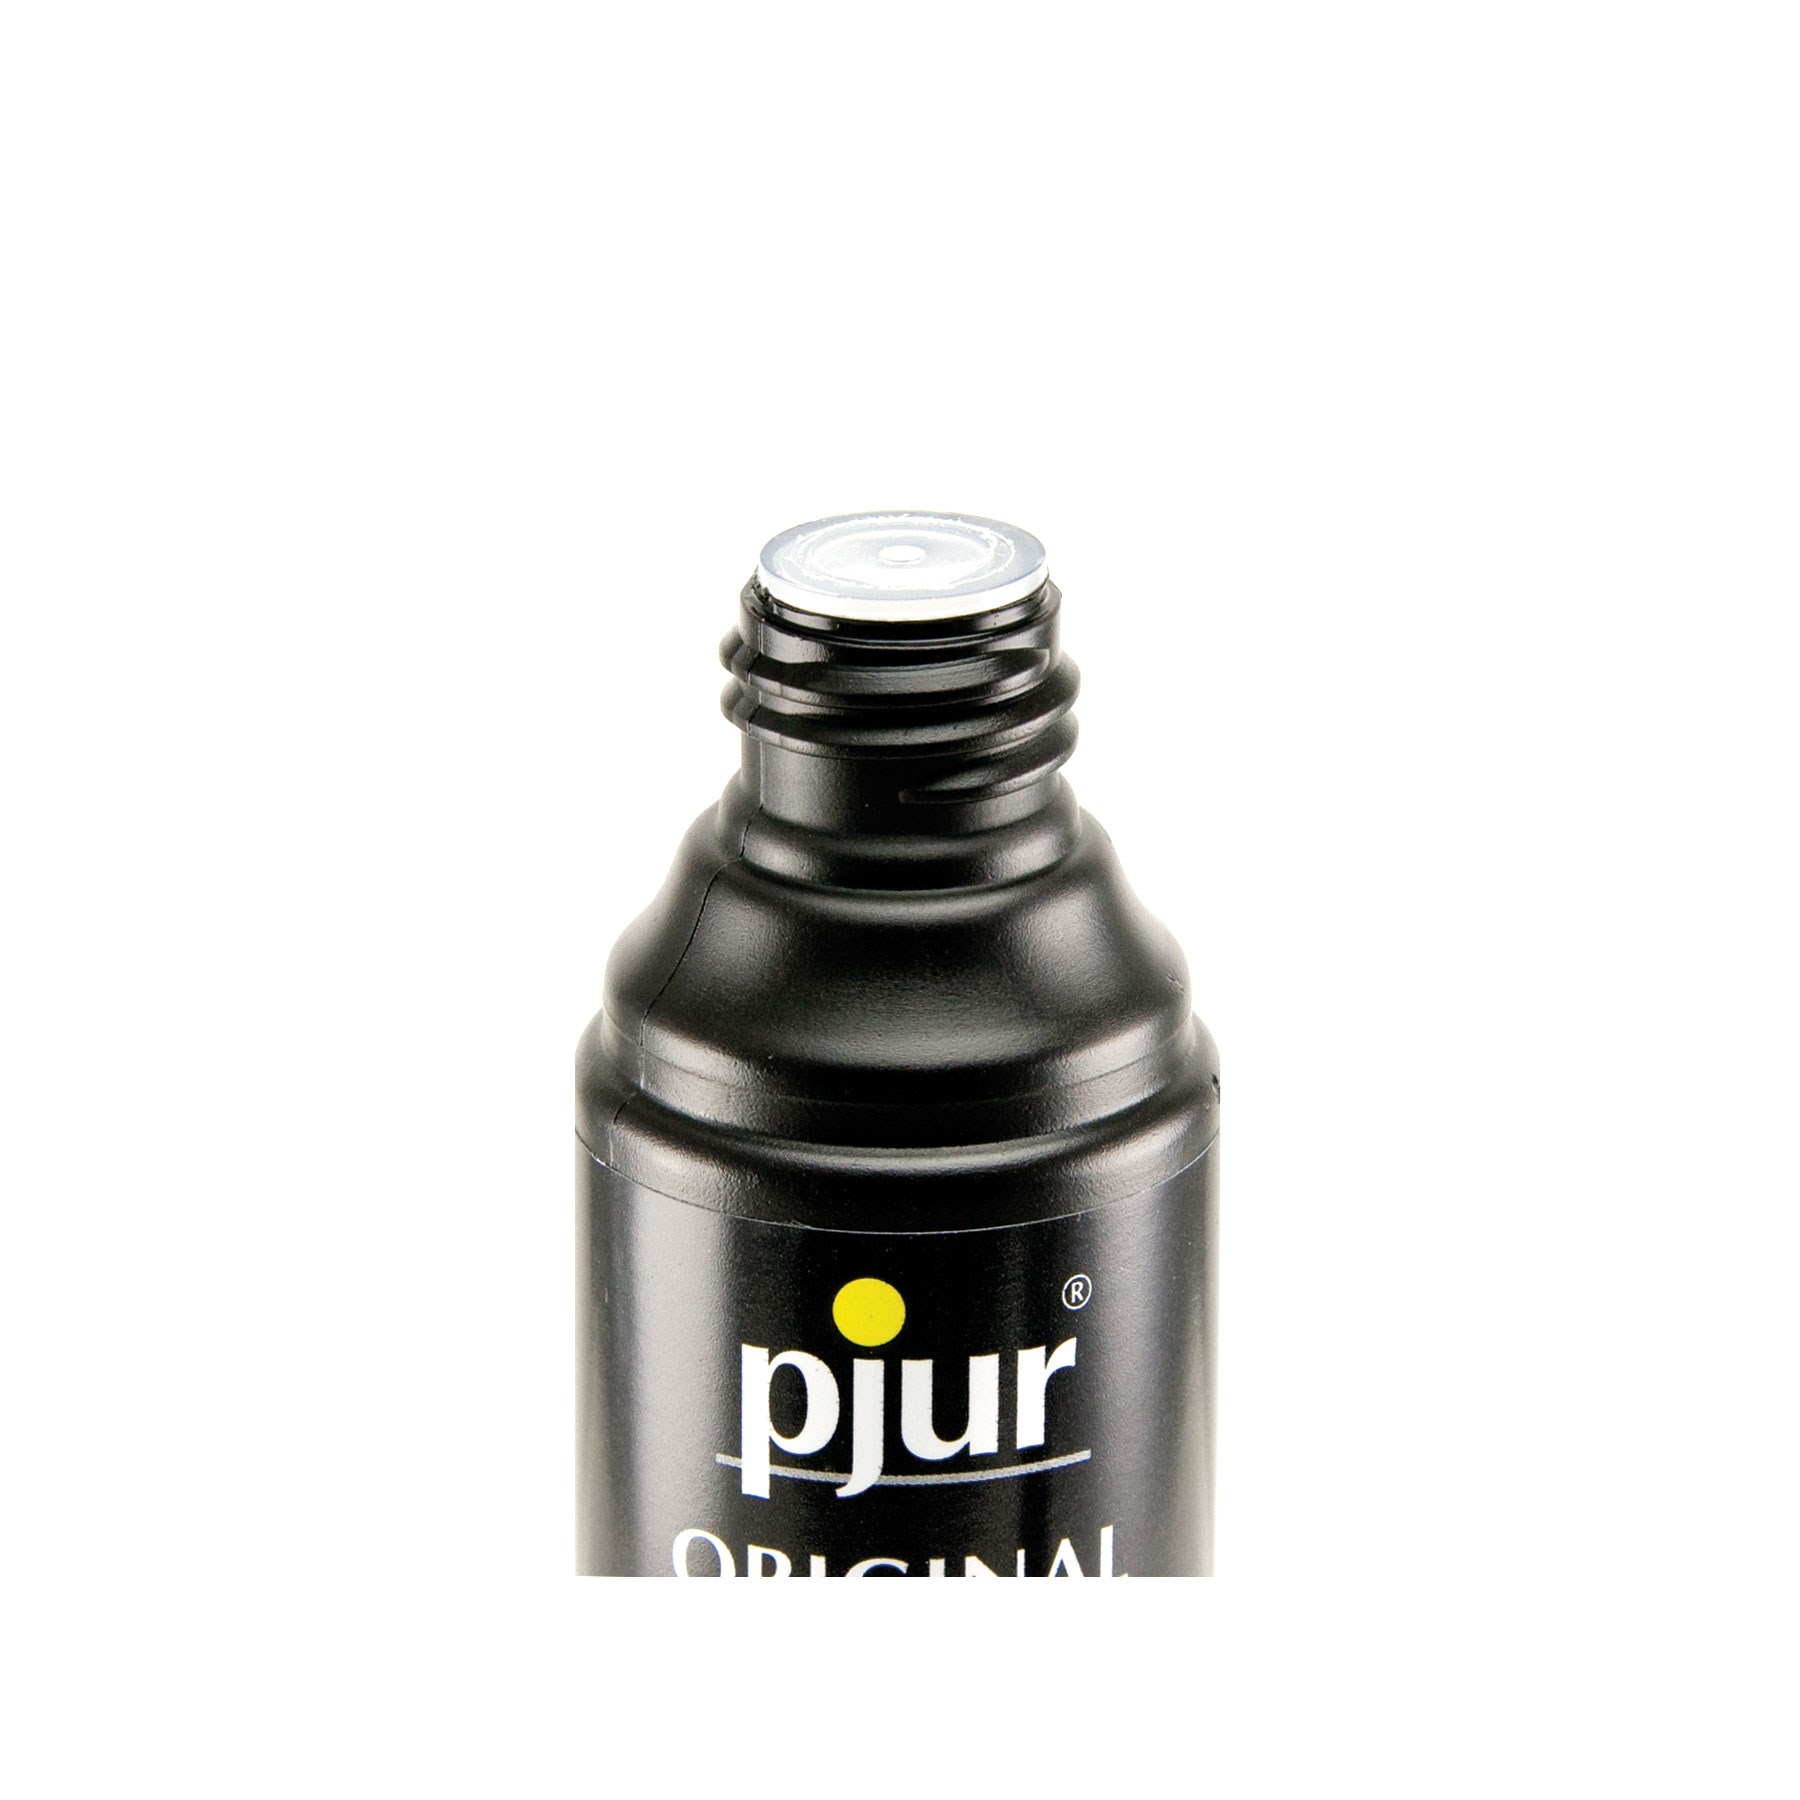 Pjur Original Silicone Lubricant foil seal under cap